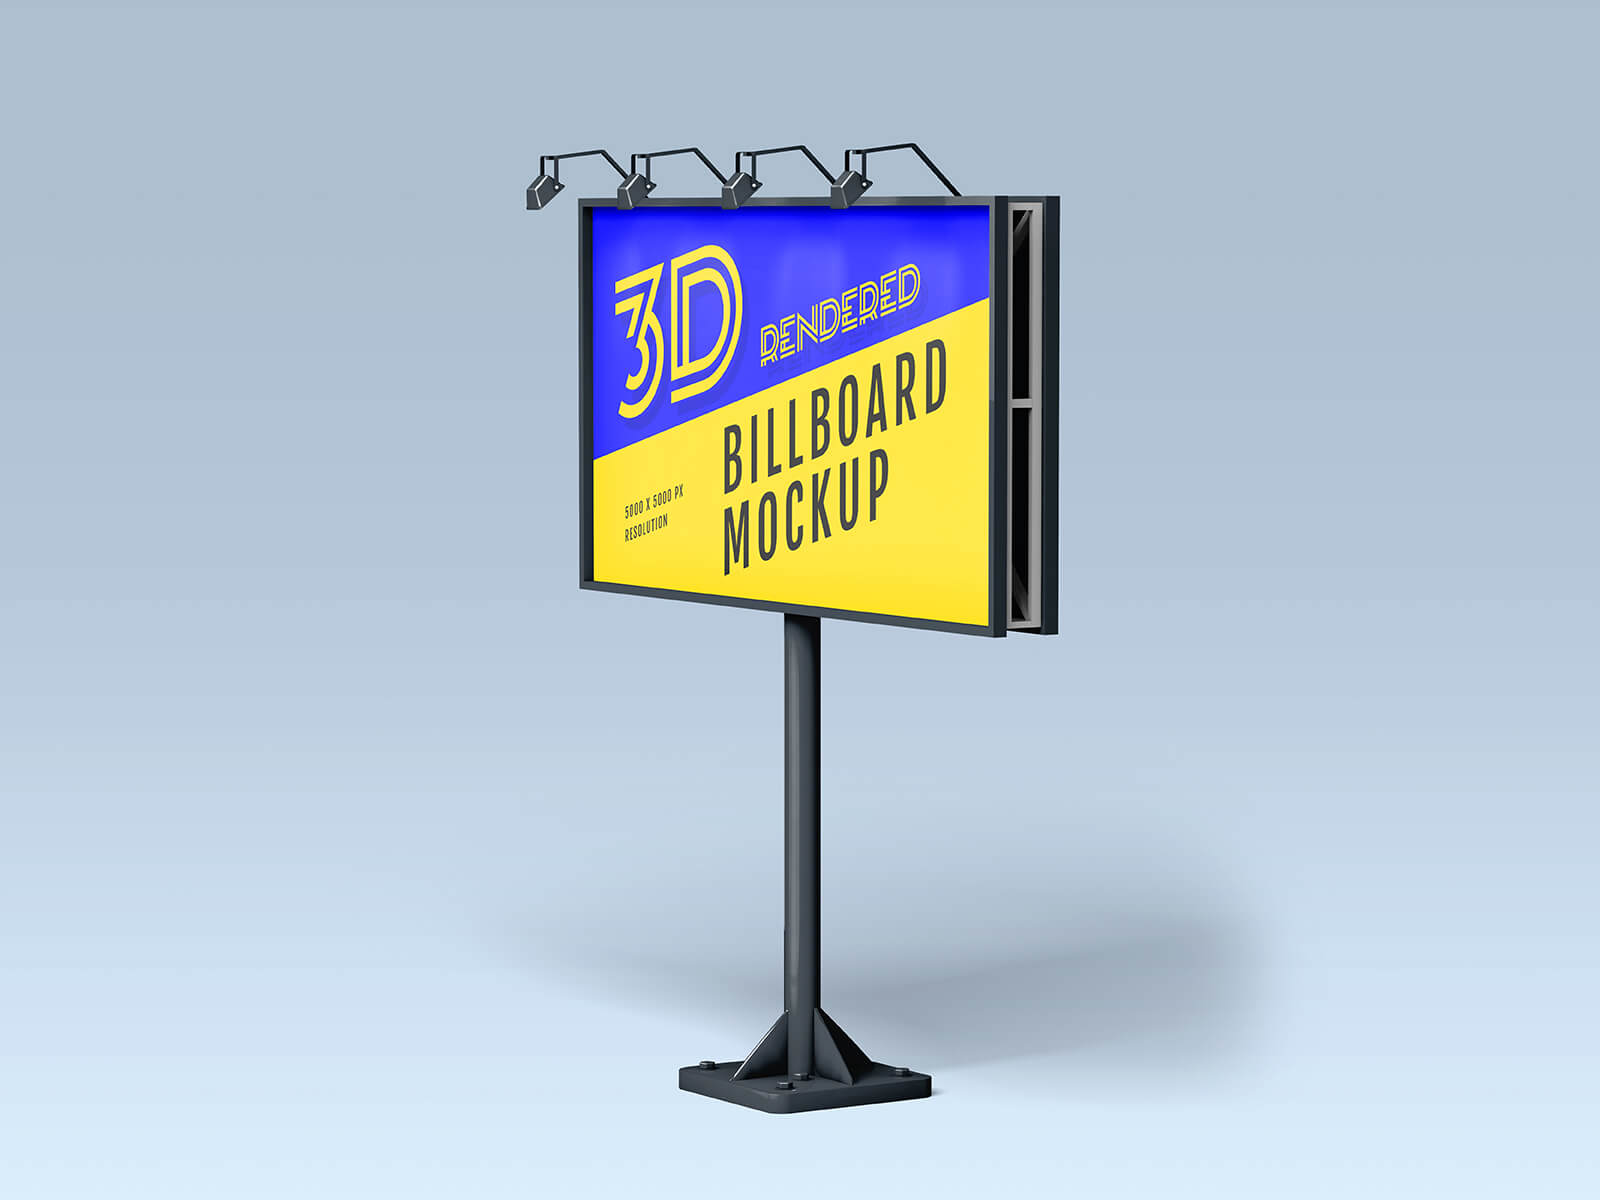 3 Free 3D Rendered Billboard Mockup PSD Files